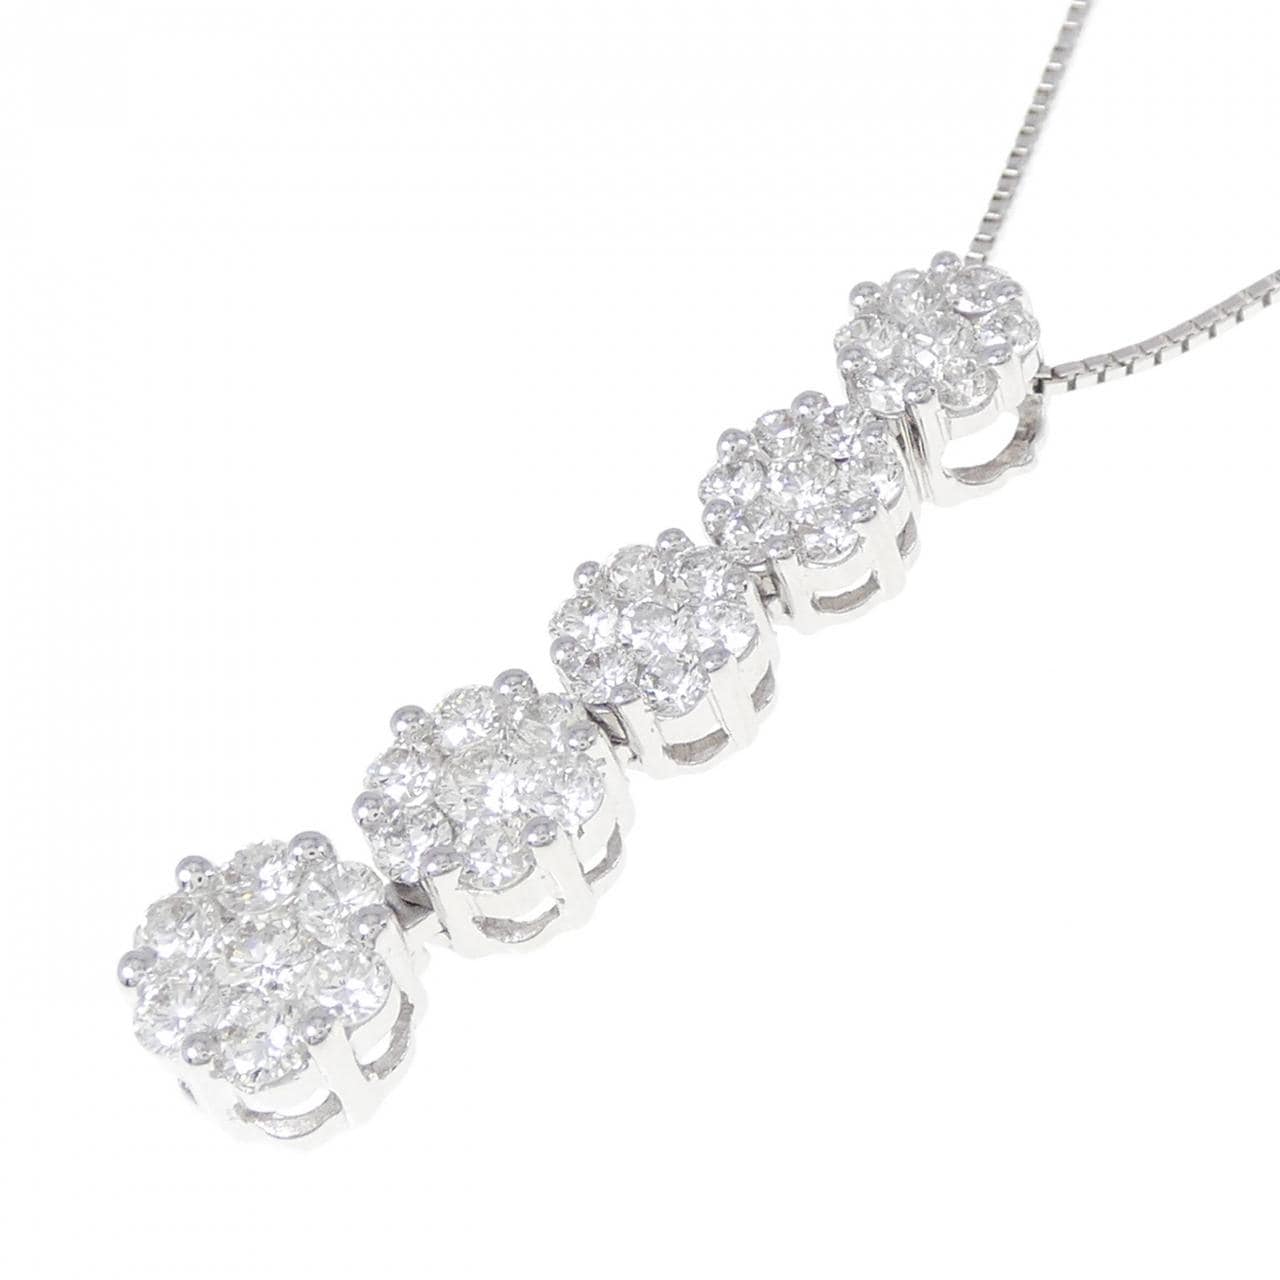 K18WG ダイヤモンド1.00ct ネックレス 最終価格 - アクセサリー